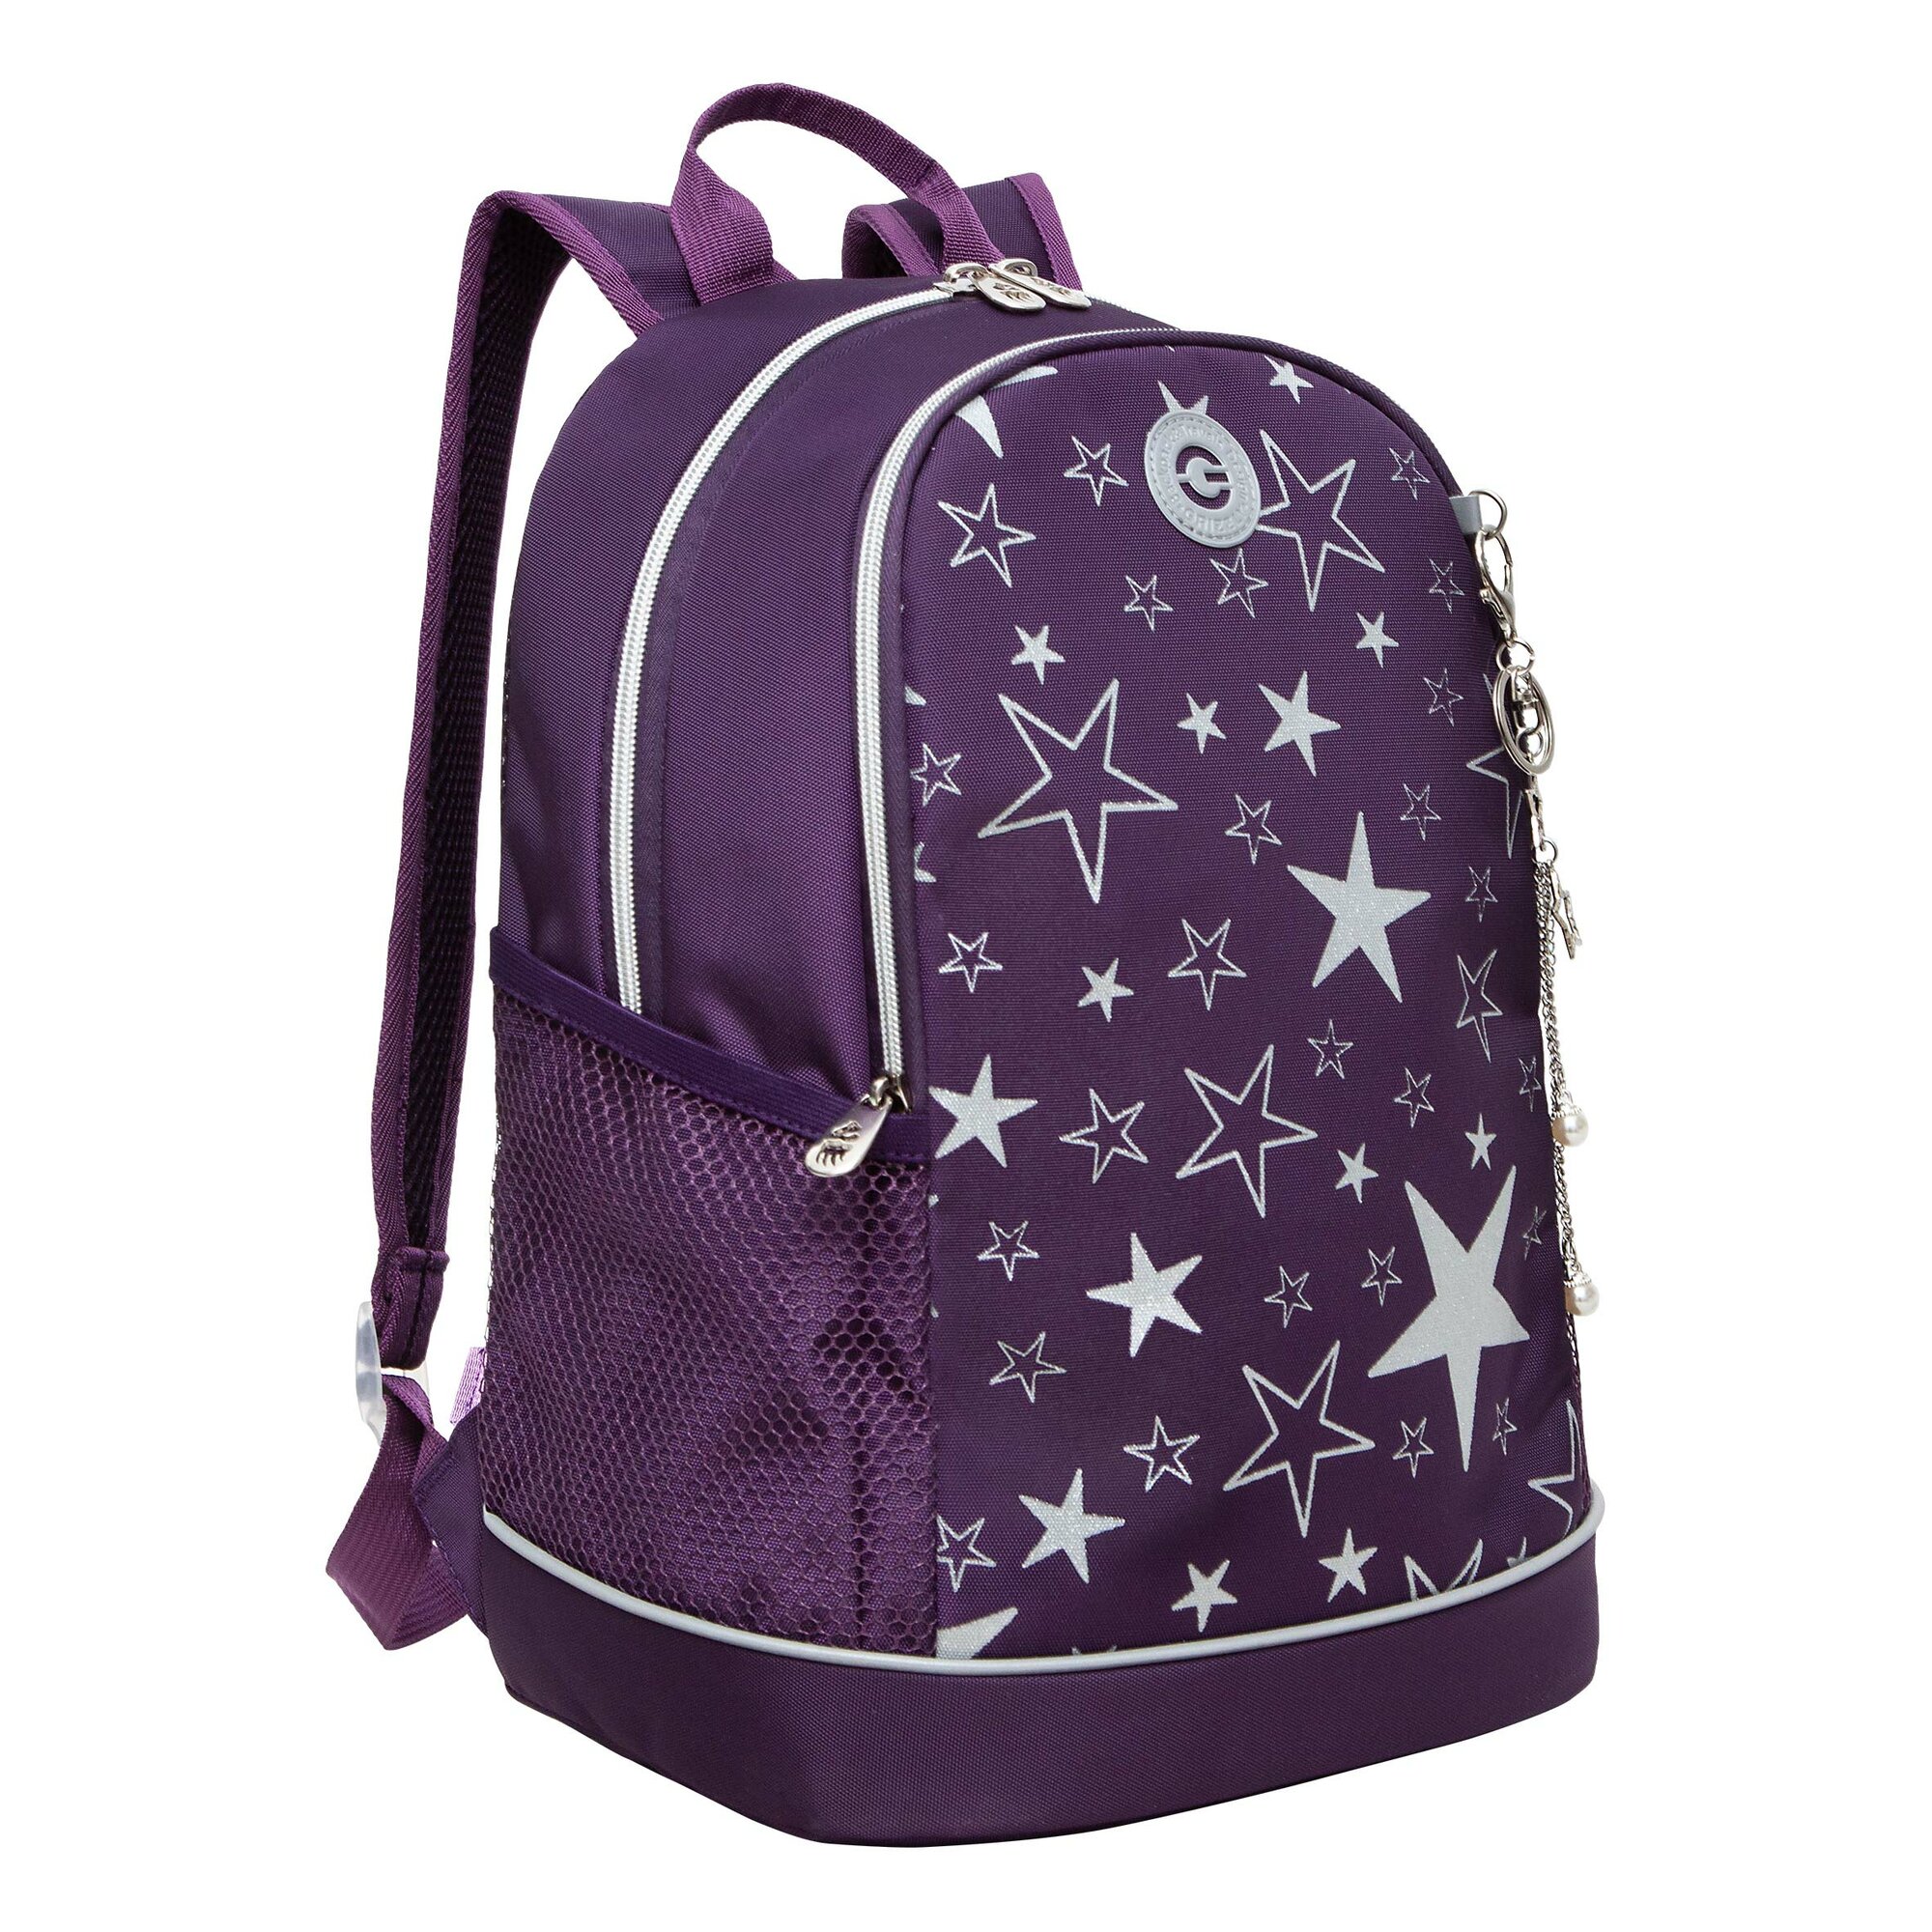 Рюкзак школьный GRIZZLY с карманом для ноутбука 13", жесткой спинкой, двумя отделениями, для девочки RG-363-5/4